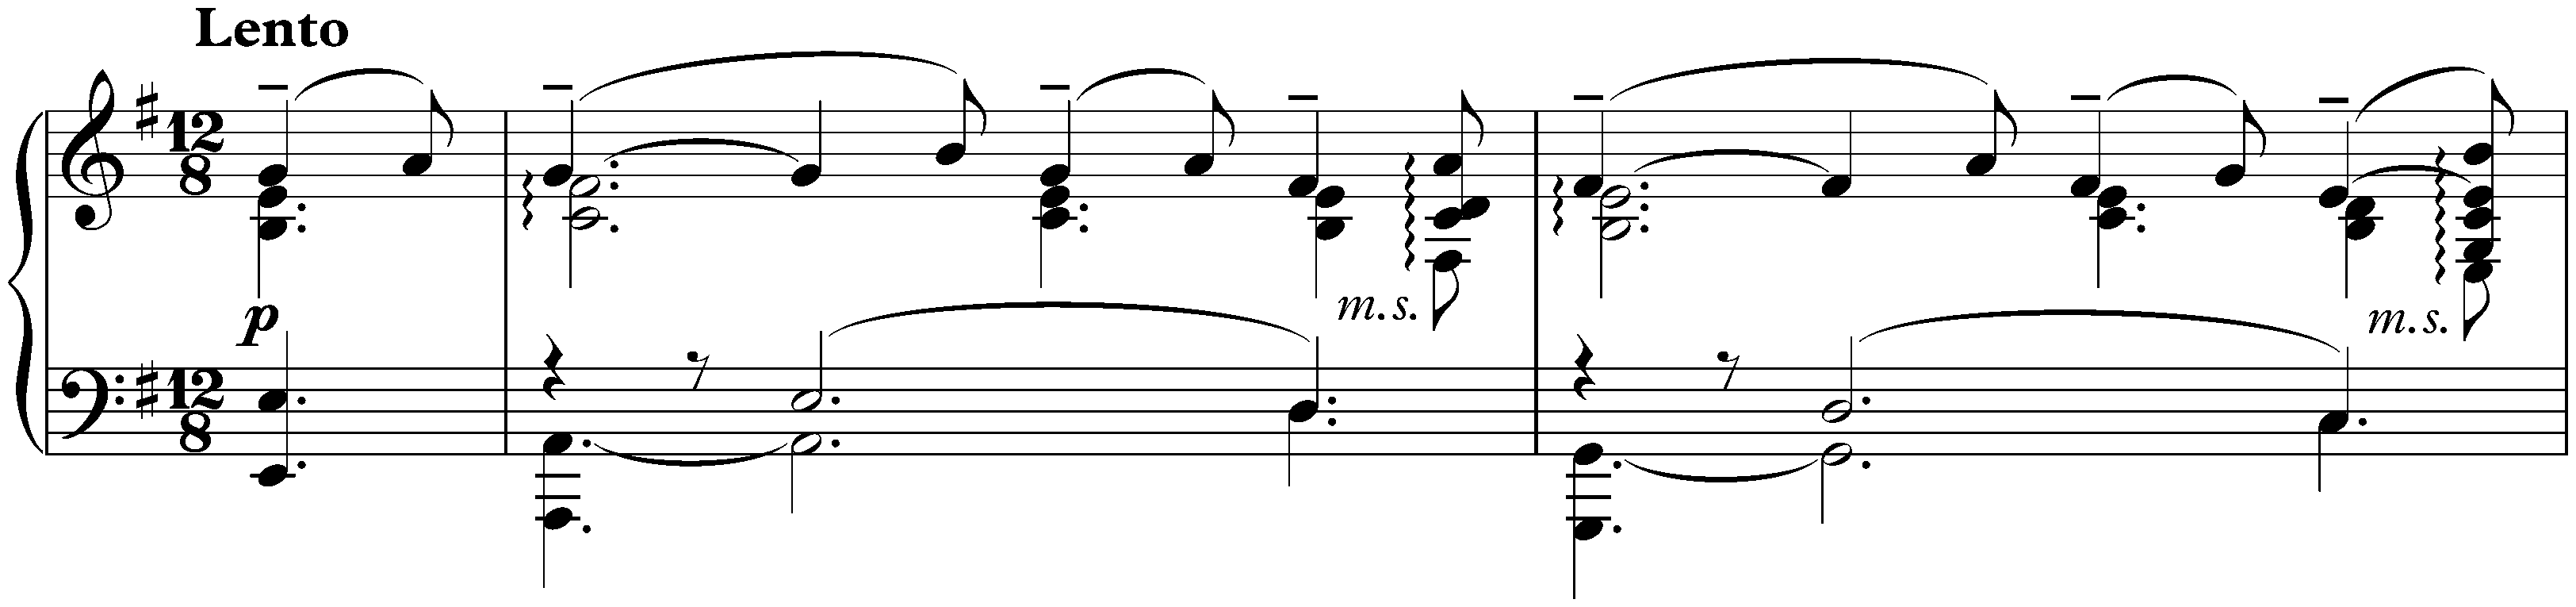 Sonata no. 2 in B-flat minor, op. 36 (second version); 2. Non allegro – Lento